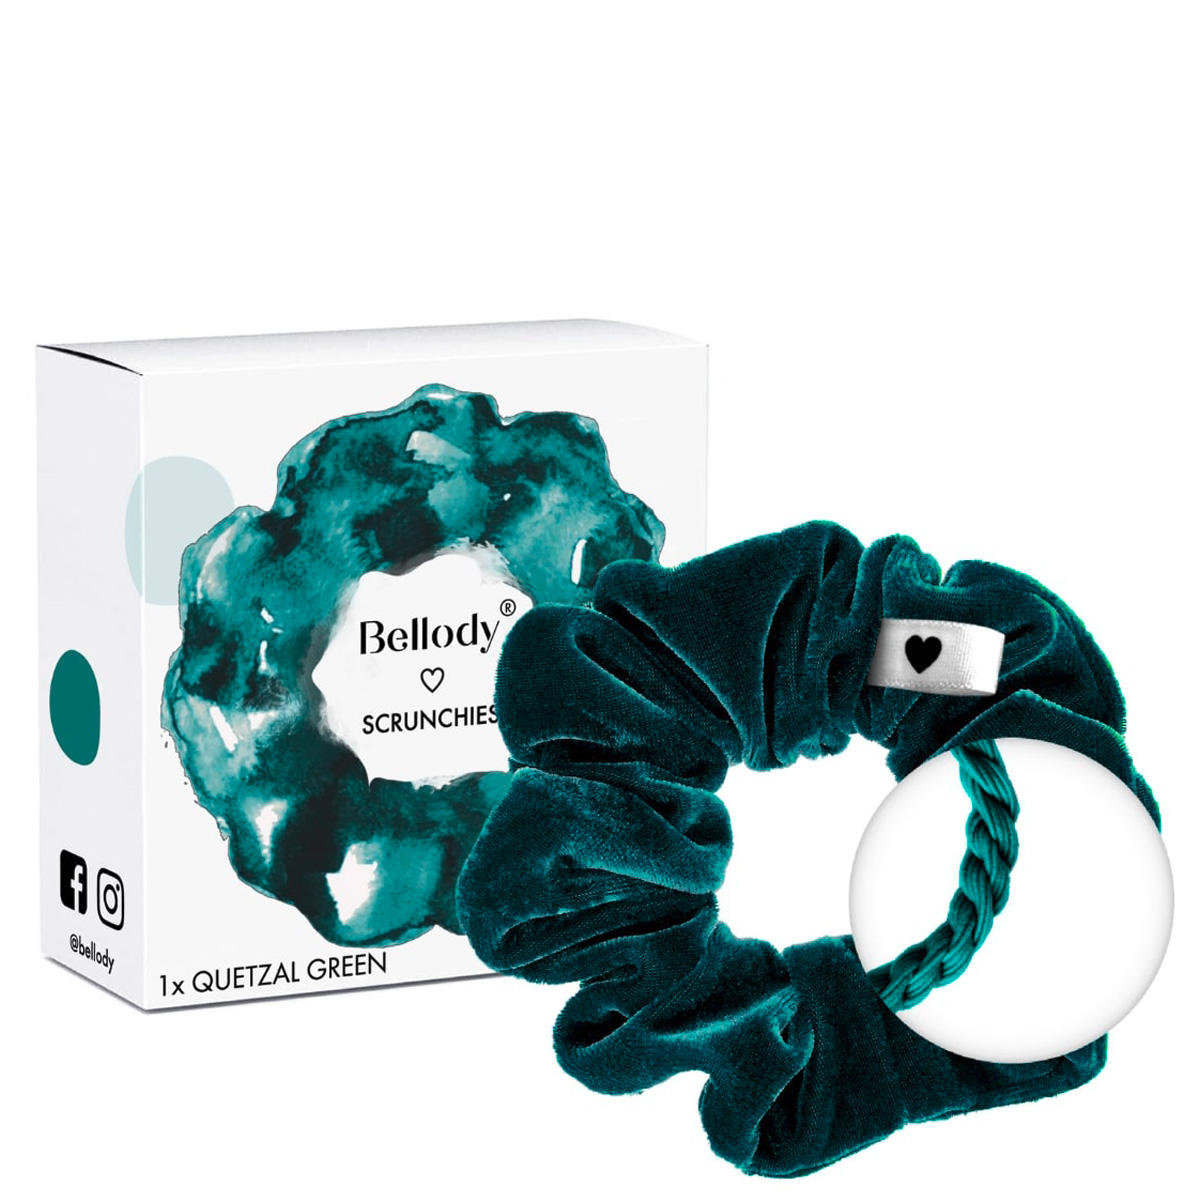 Bellody Original Scrunchies Quetzal Green 1 Stück - 2